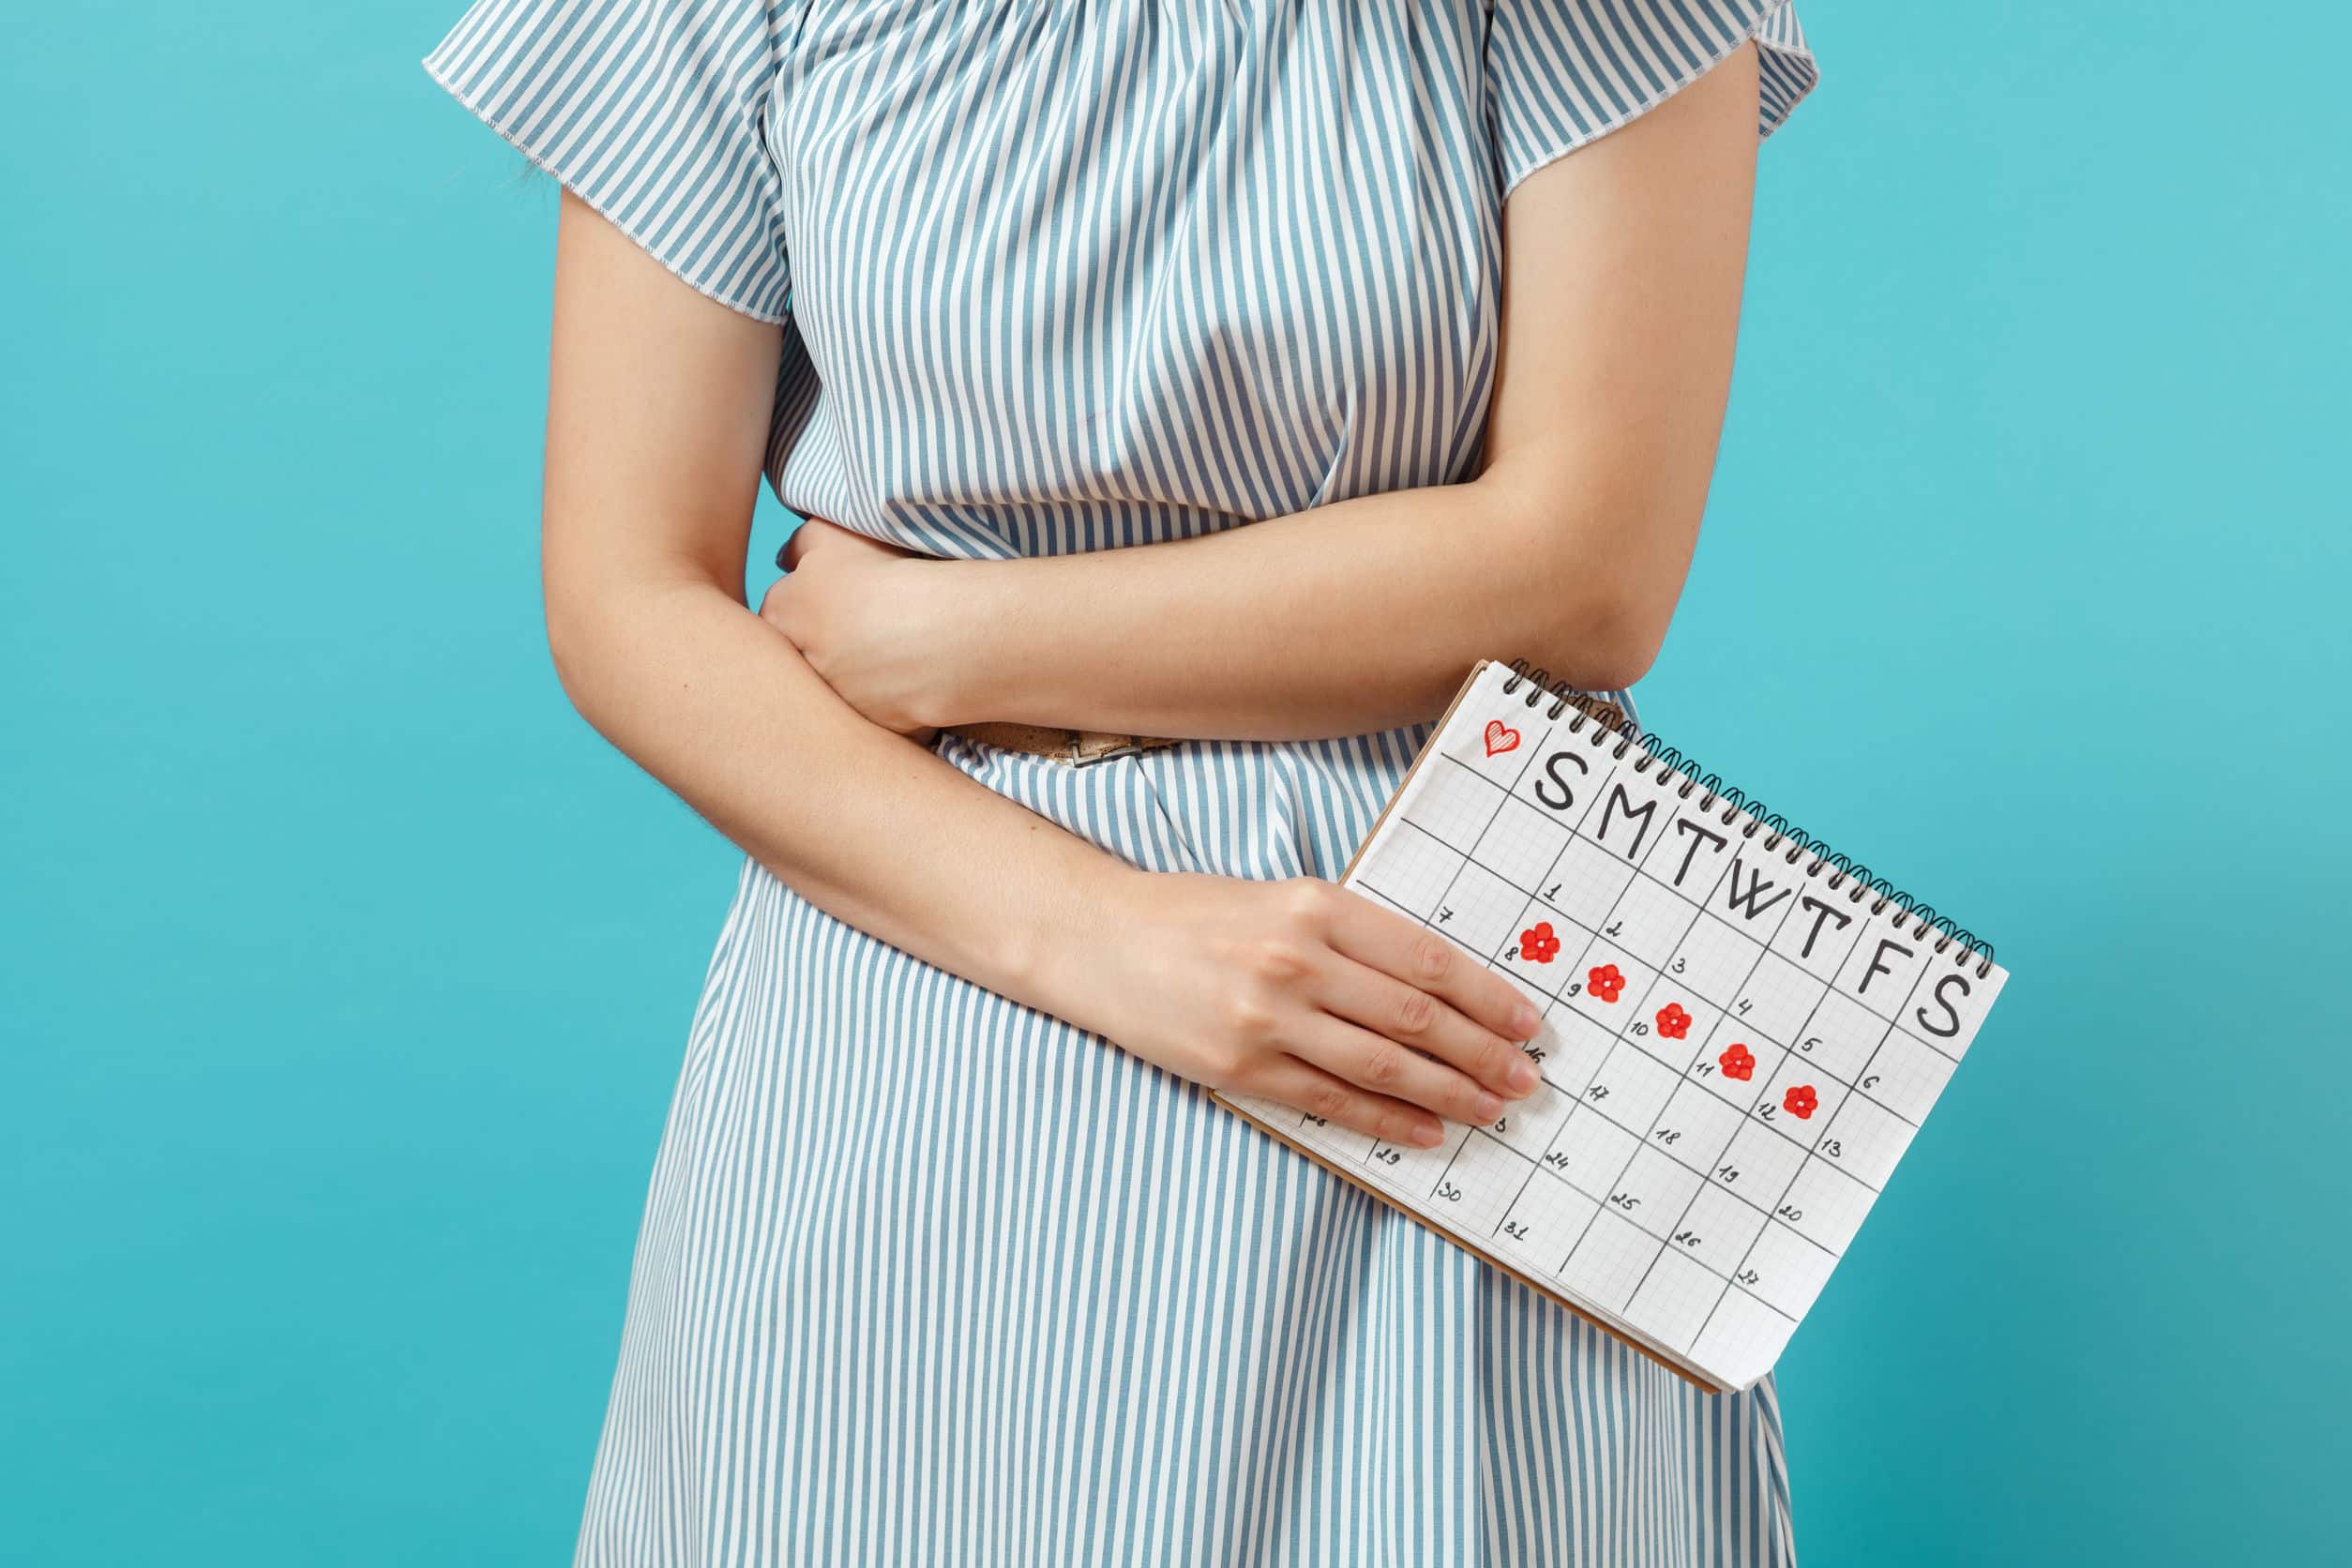 Менструационный цикл после 40 лет